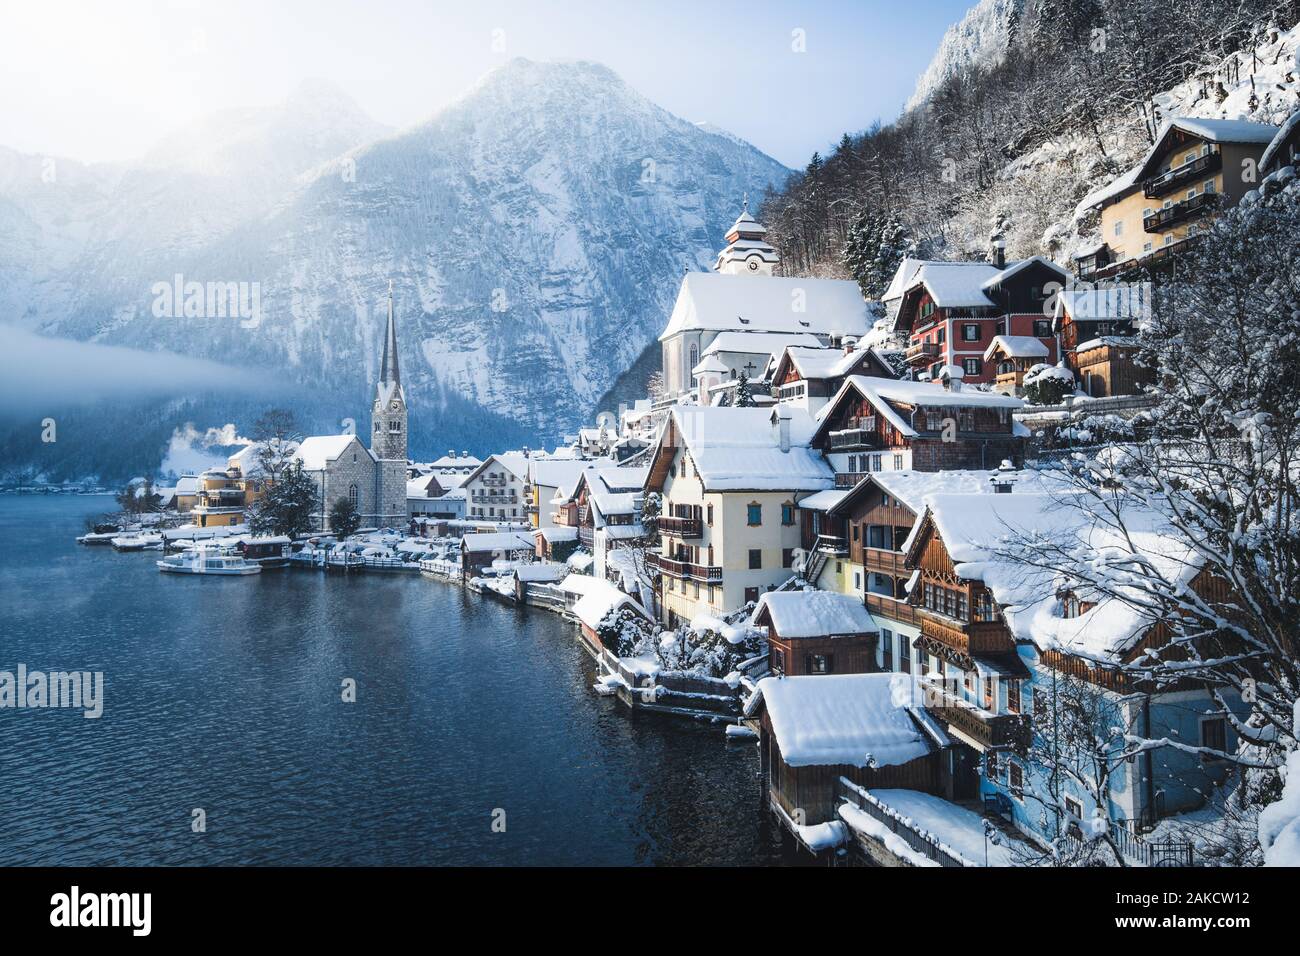 Vue de carte postale classique de la célèbre ville au bord du lac de Hallstatt dans les Alpes avec navire à passagers sur une belle journée ensoleillée à froid avec ciel bleu et nuages dans wint Banque D'Images